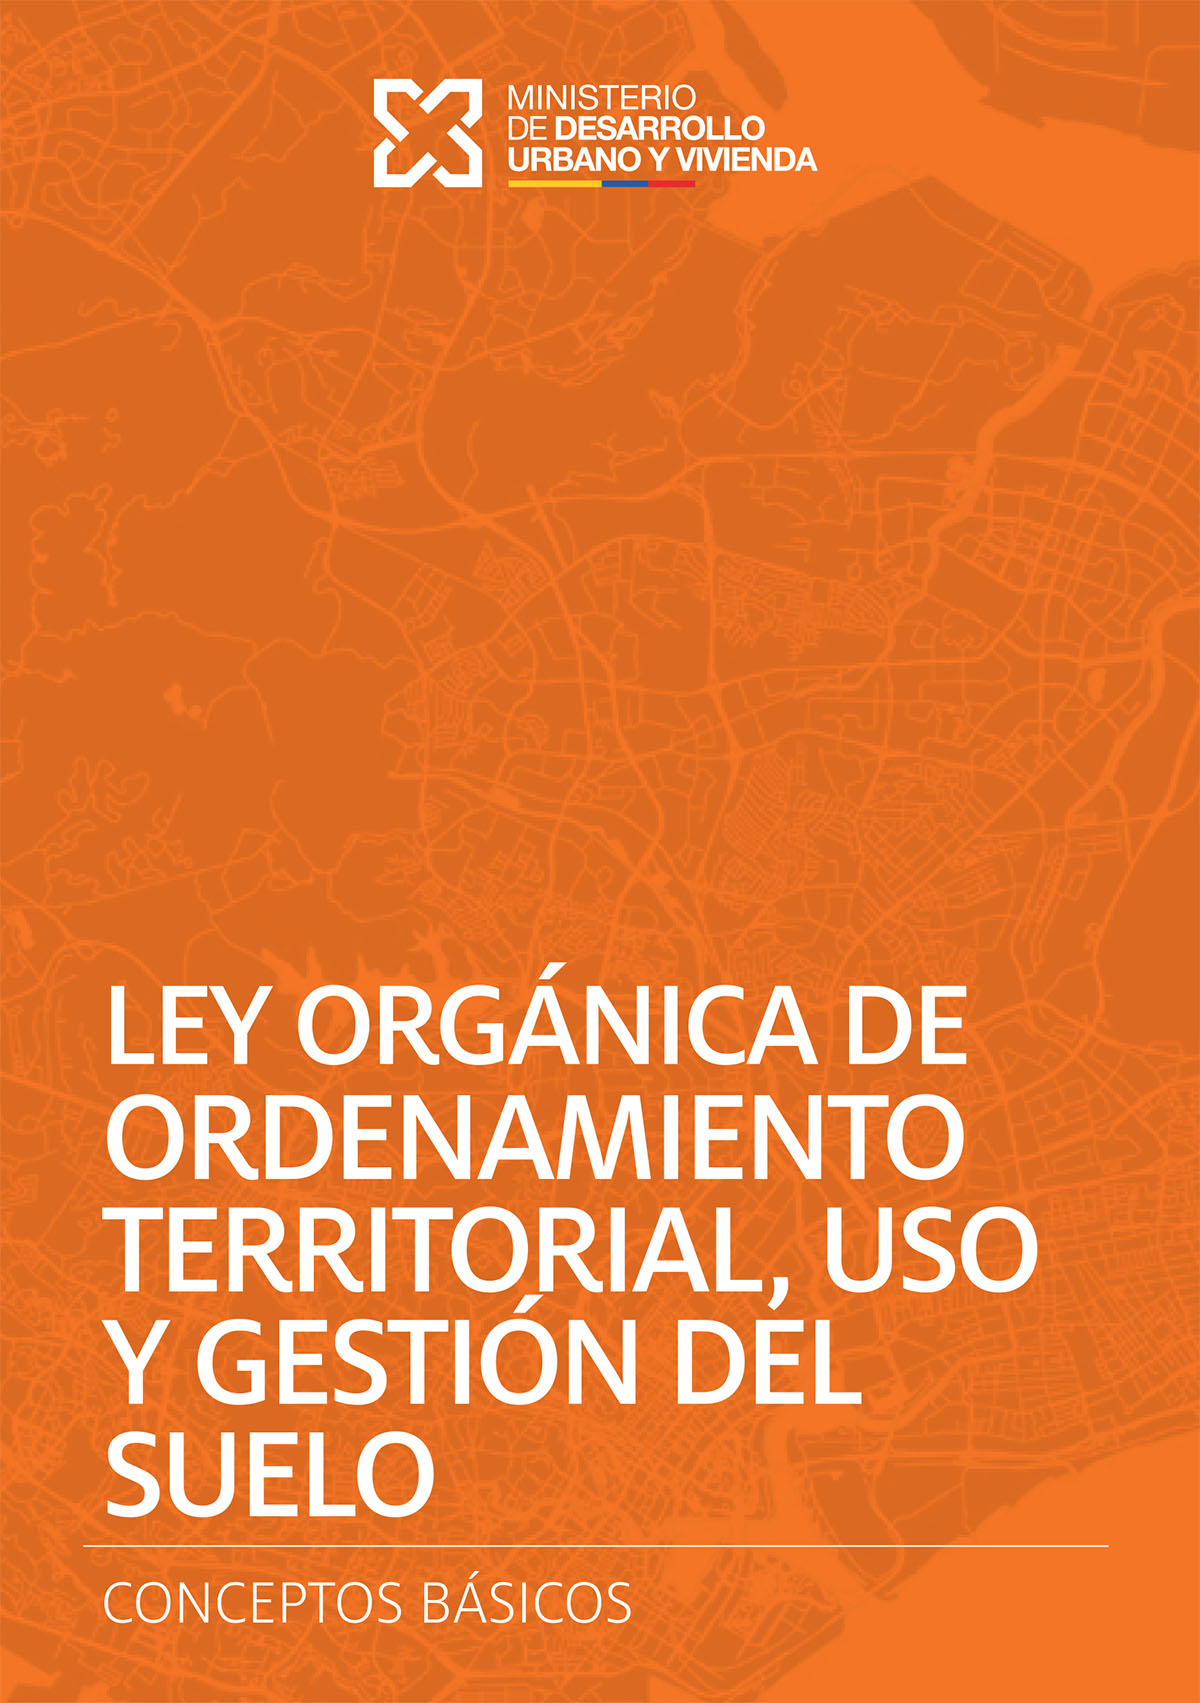 Ley Orgánica de ordenamiento territorial, uso y gestión del suelo